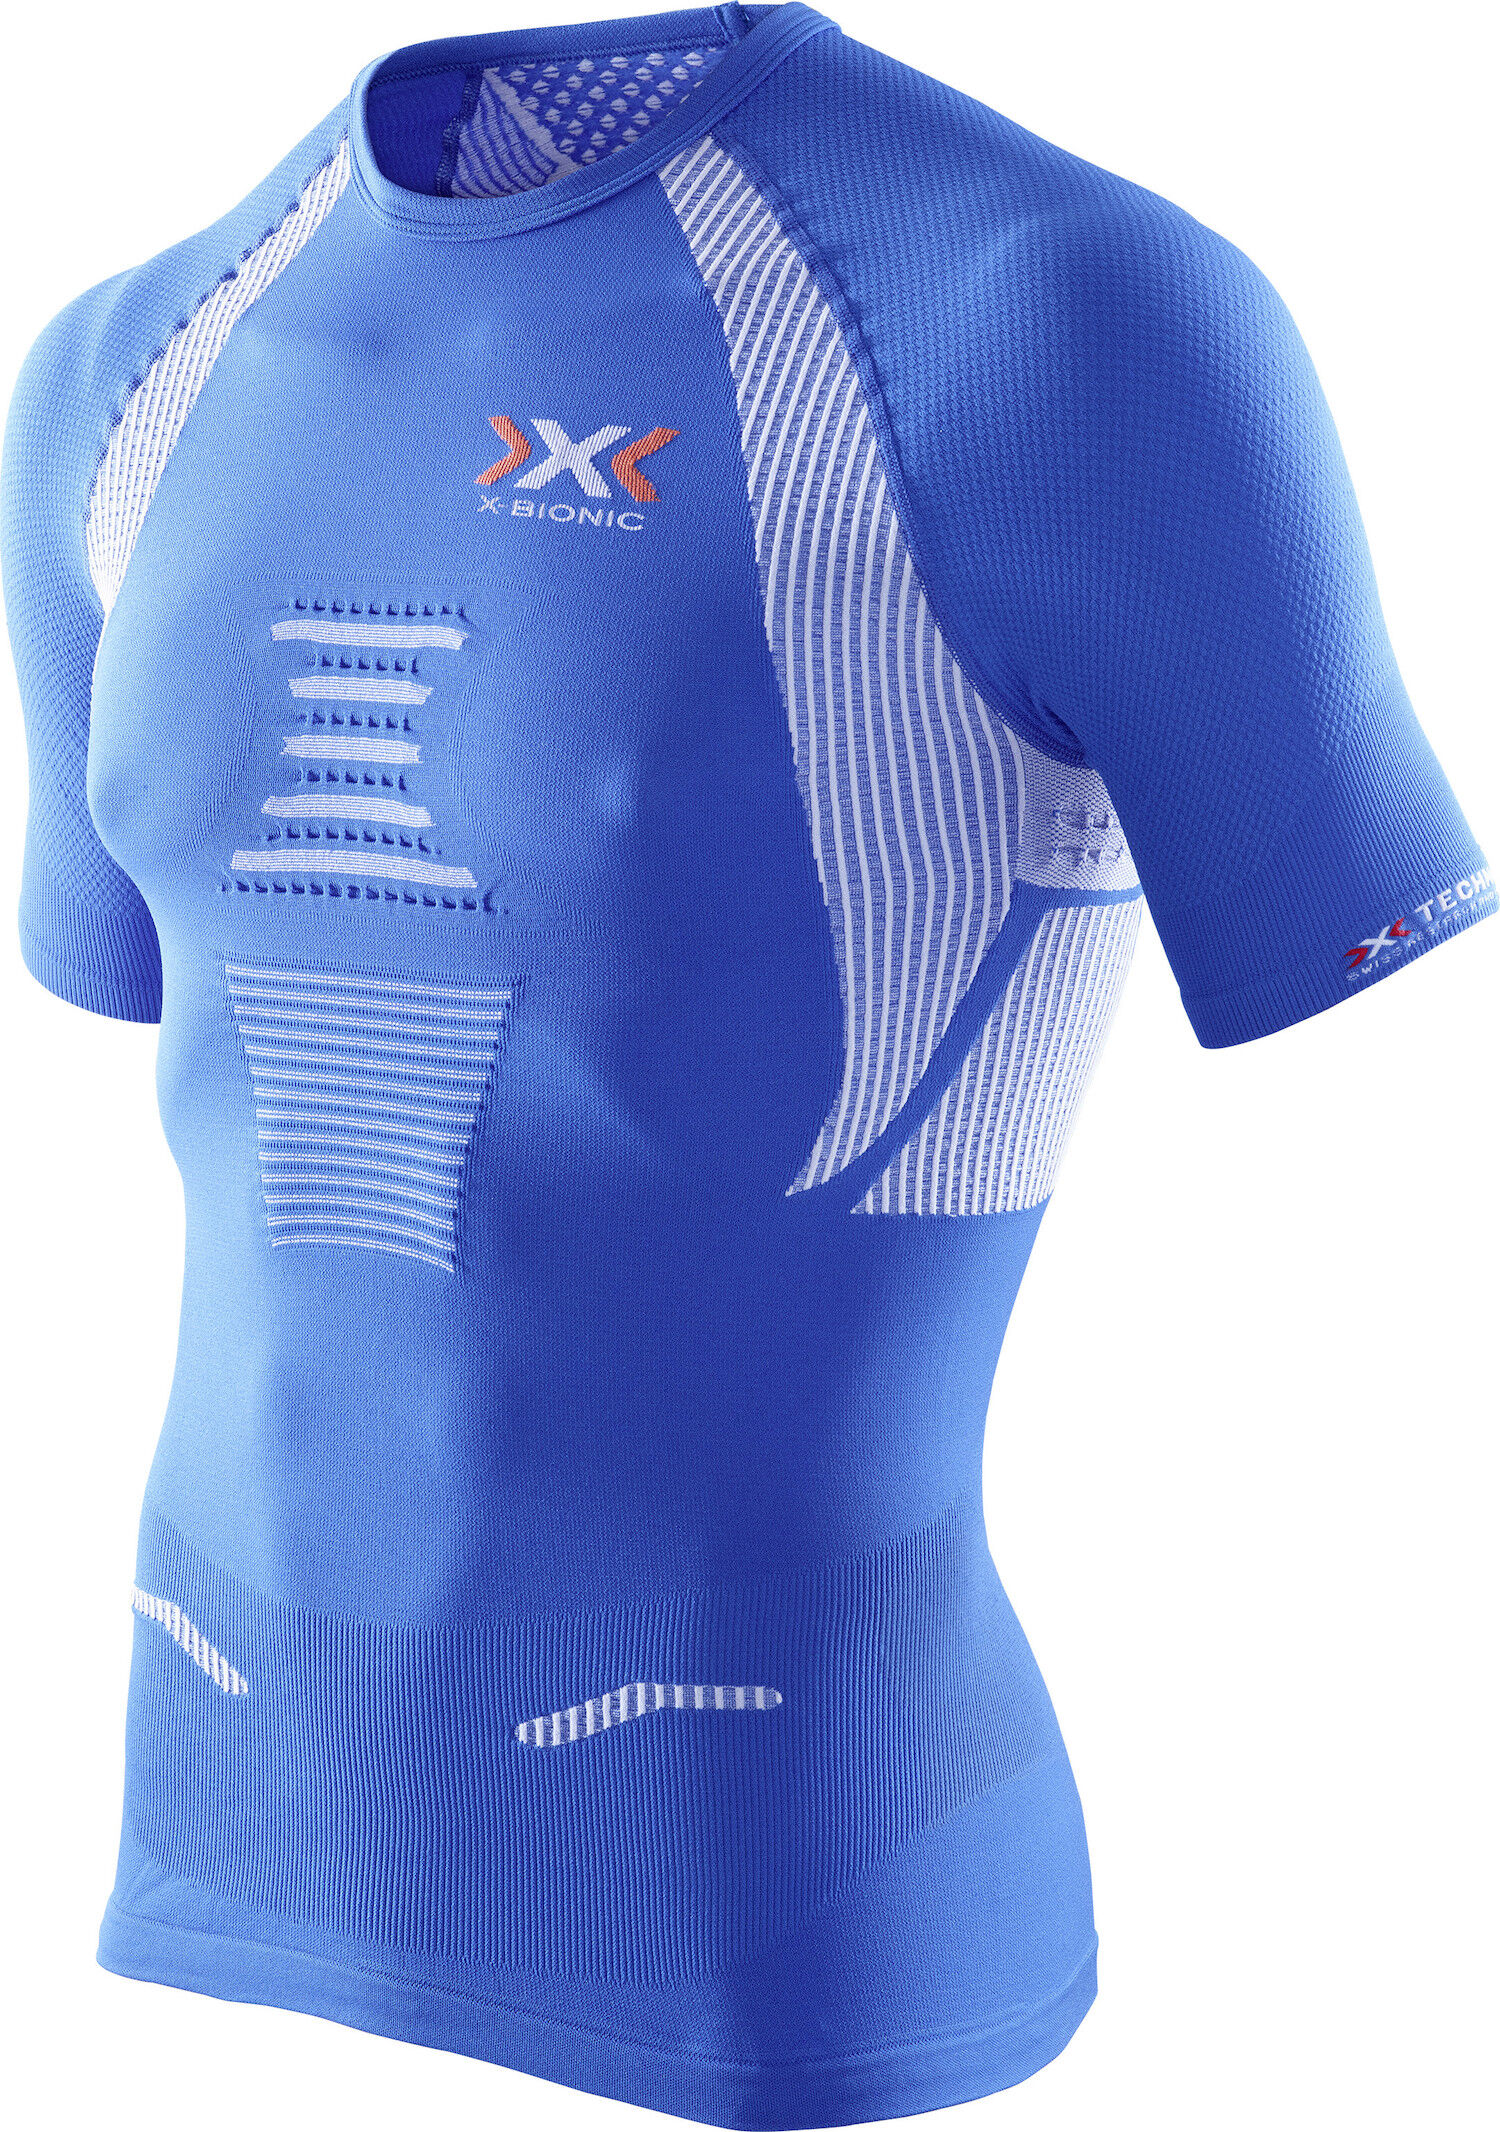 X-Bionic - The Trick - T-shirt - Uomo